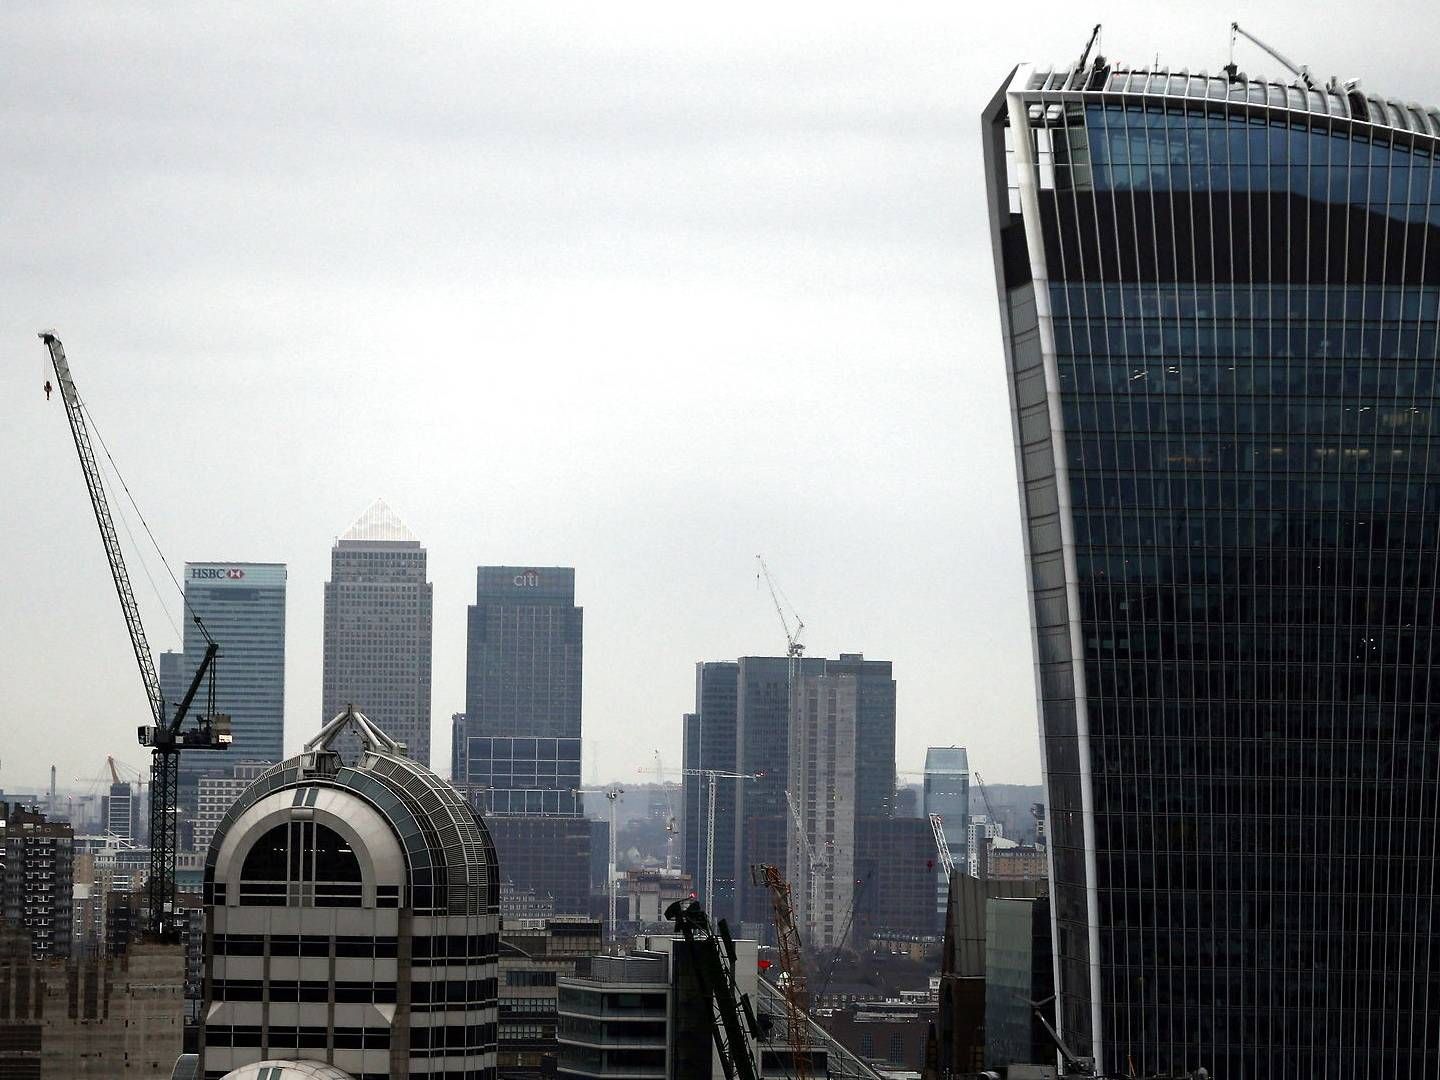 Det er blandt de store såkaldte magic circle-firmaer i London kun Slaughter and May, der ifølge Financial Times holder fast i en såkaldt lockstep-model. | Foto: Neil Hall/Reuters/Ritzau Scanpix